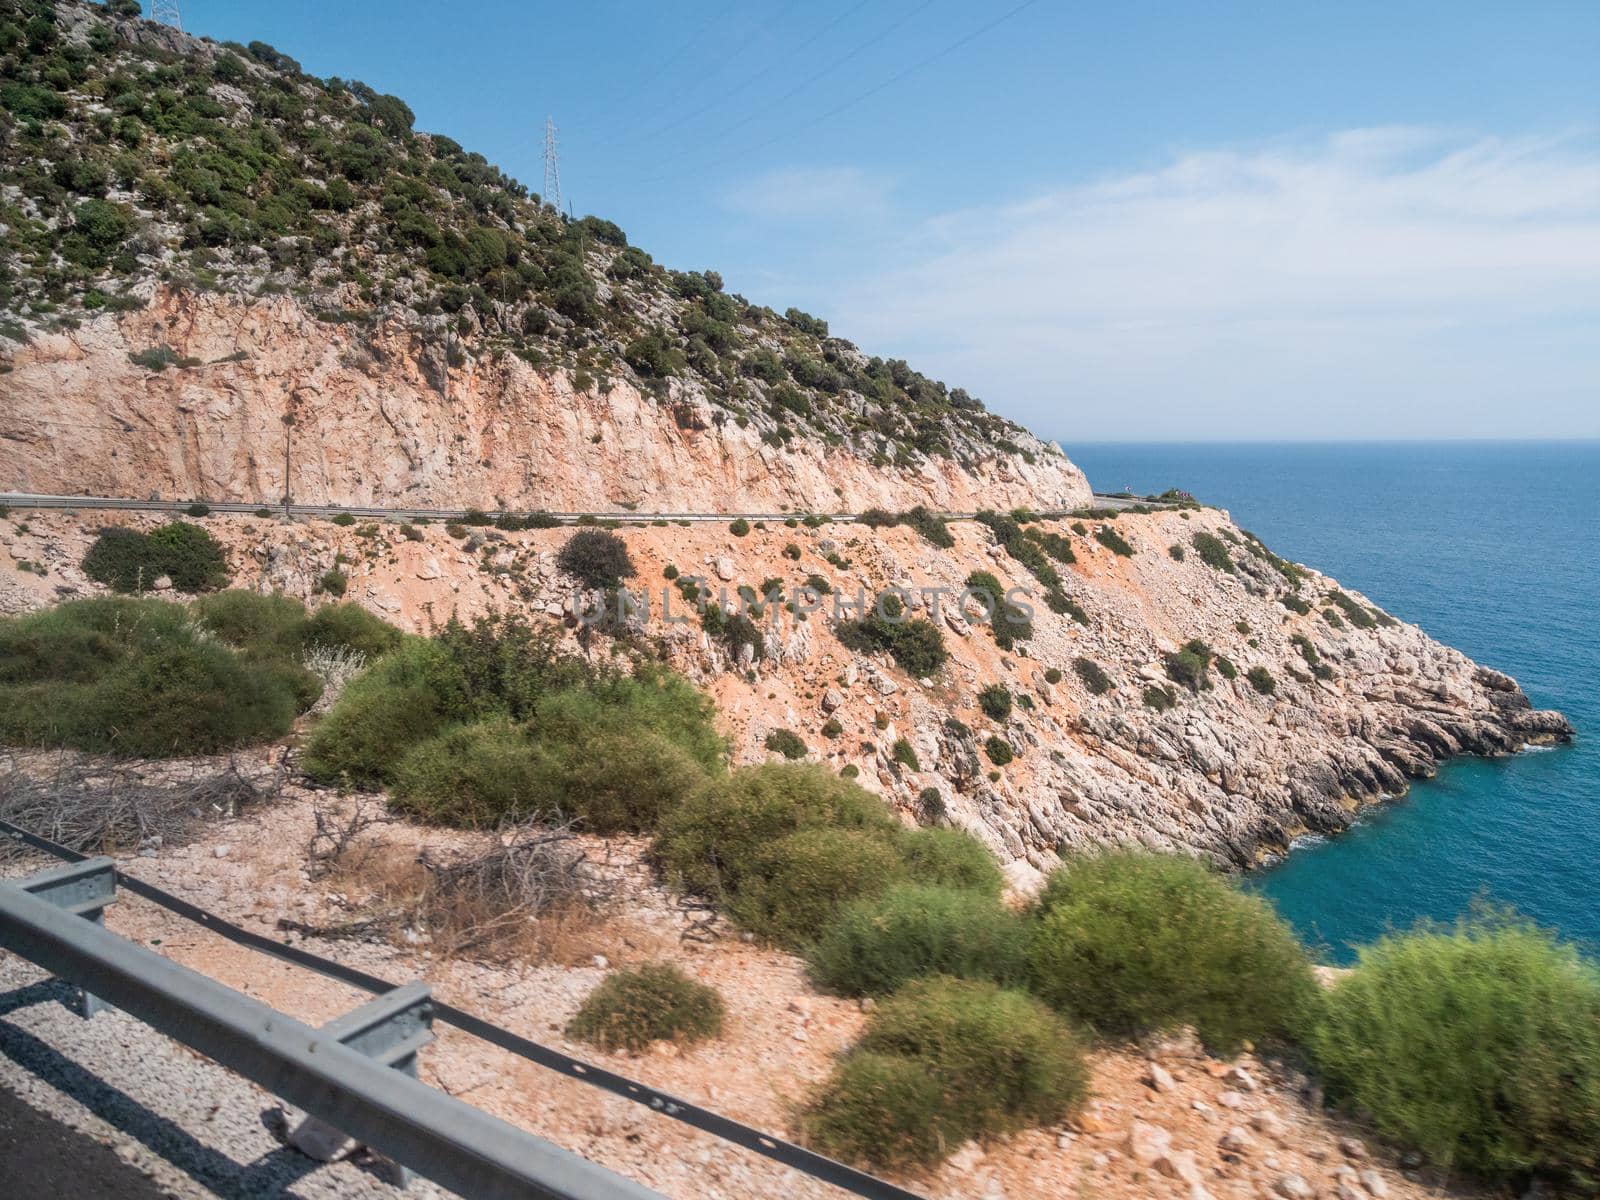 Mountain serpentine road along Mediterranean sea. Demre Finike Yolu road . Turkey.